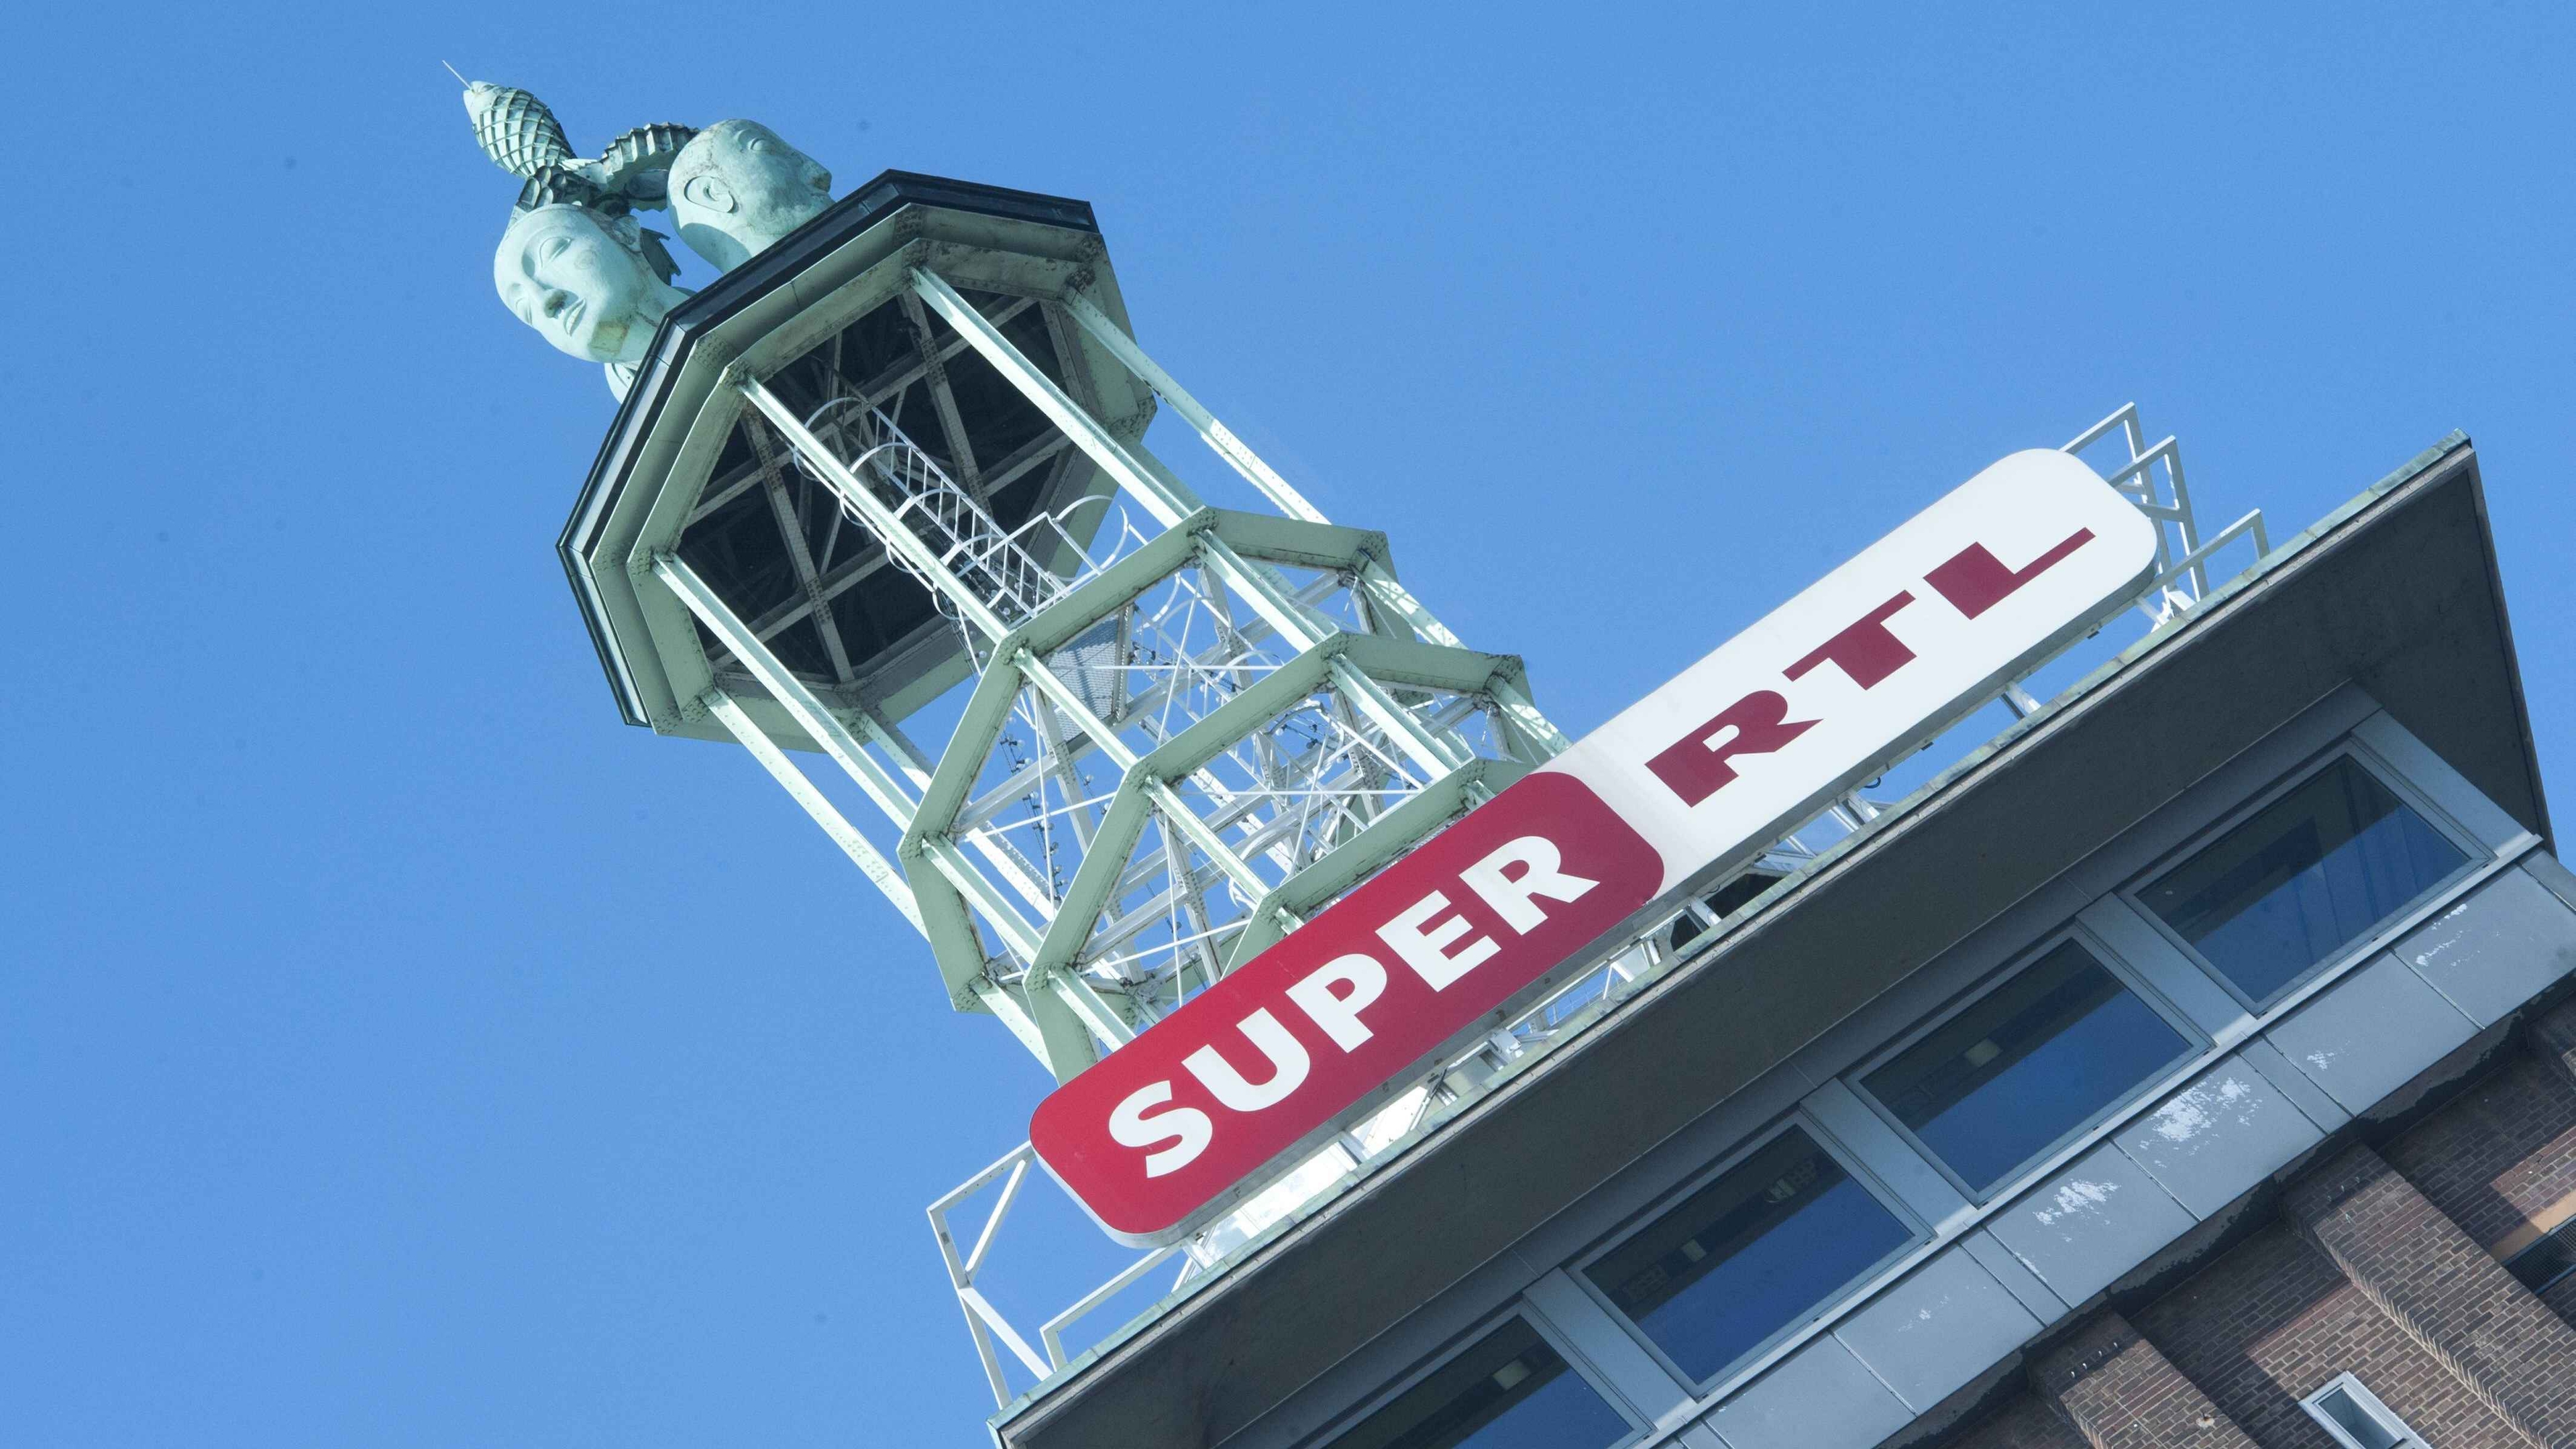 RTL steckt Kindersender Super RTL am Dienstag in ein neues Gewand